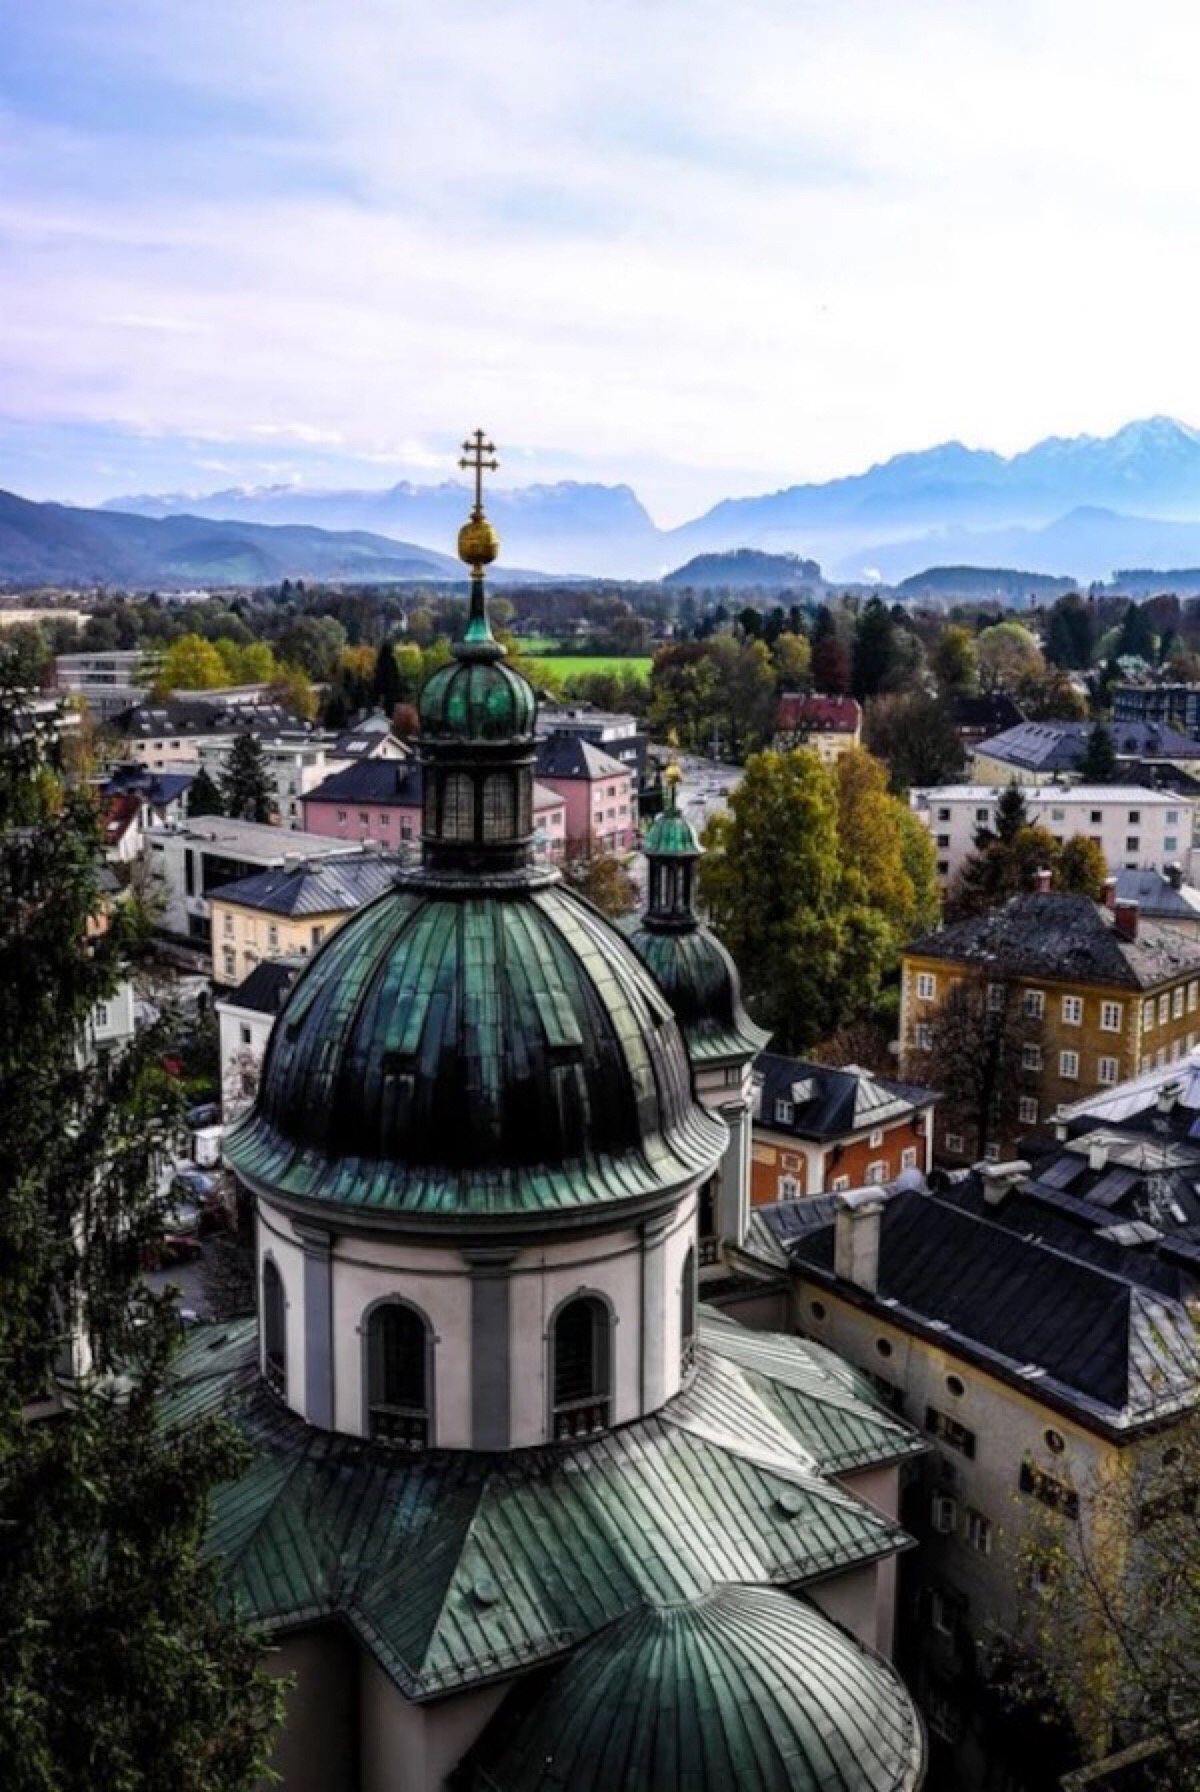 萨尔茨堡,是奥地利共和国萨尔茨堡州的首府,位于奥地利的西部,是继